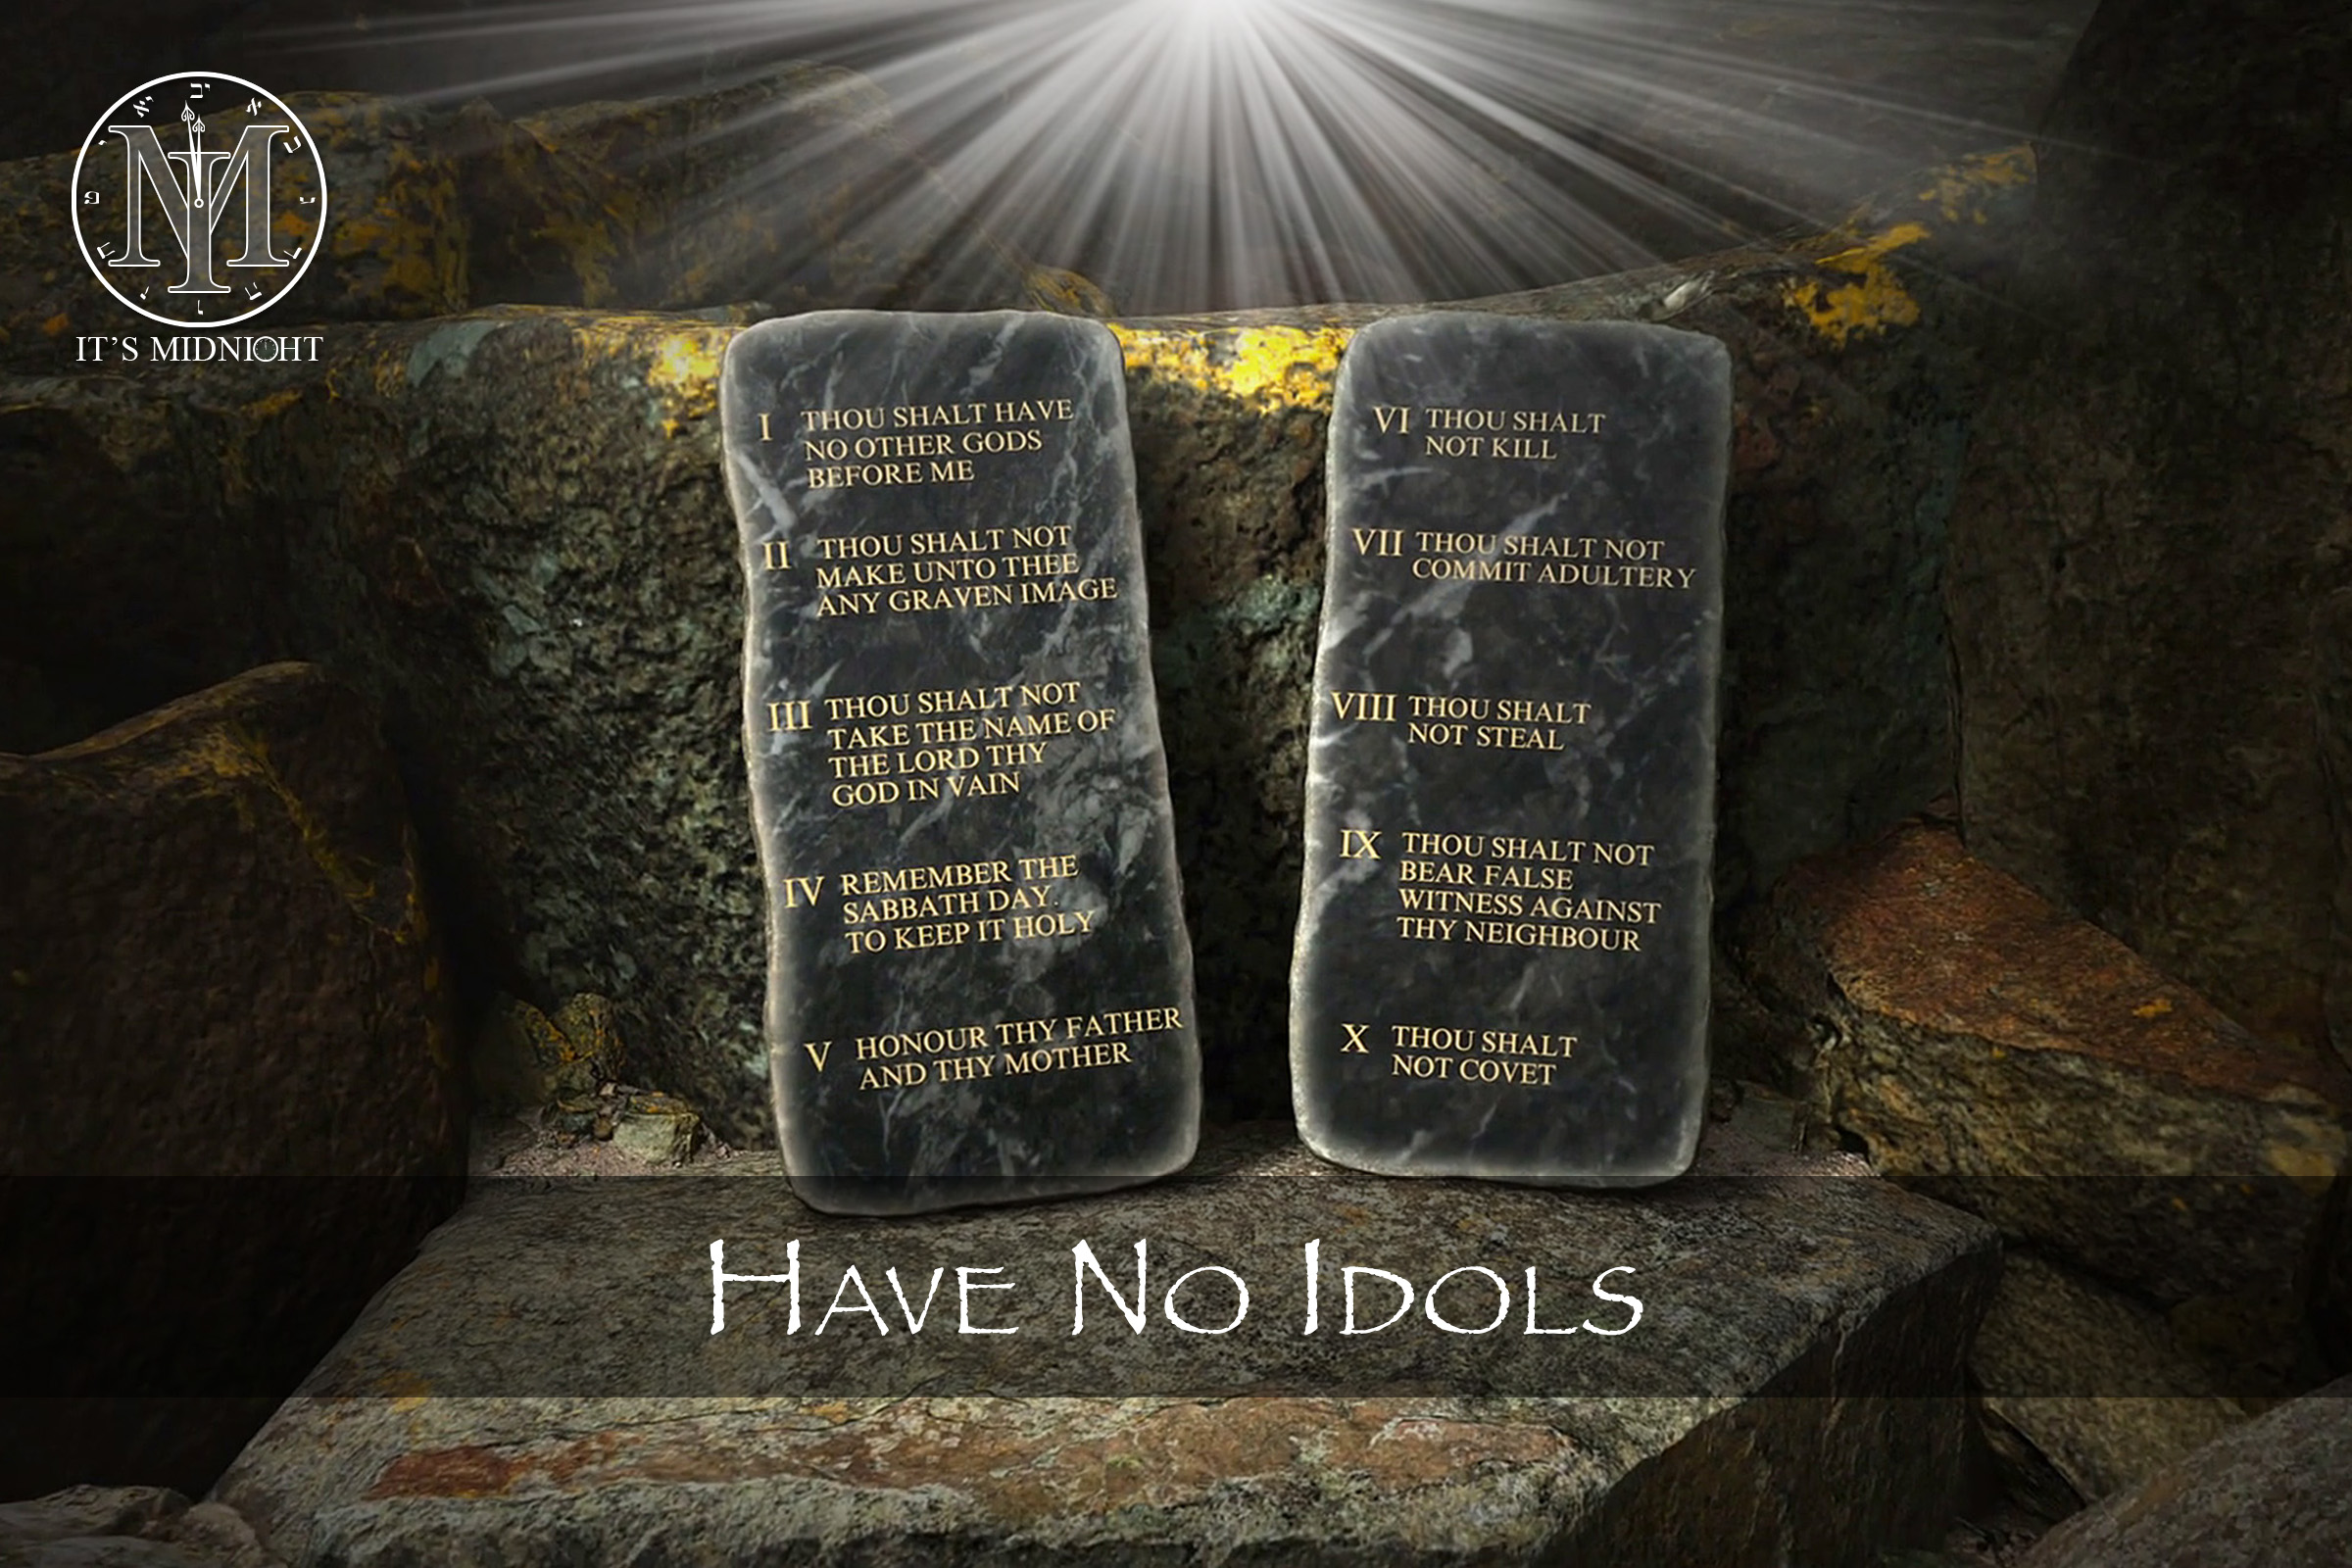 2nd Commandment: Have No Idols